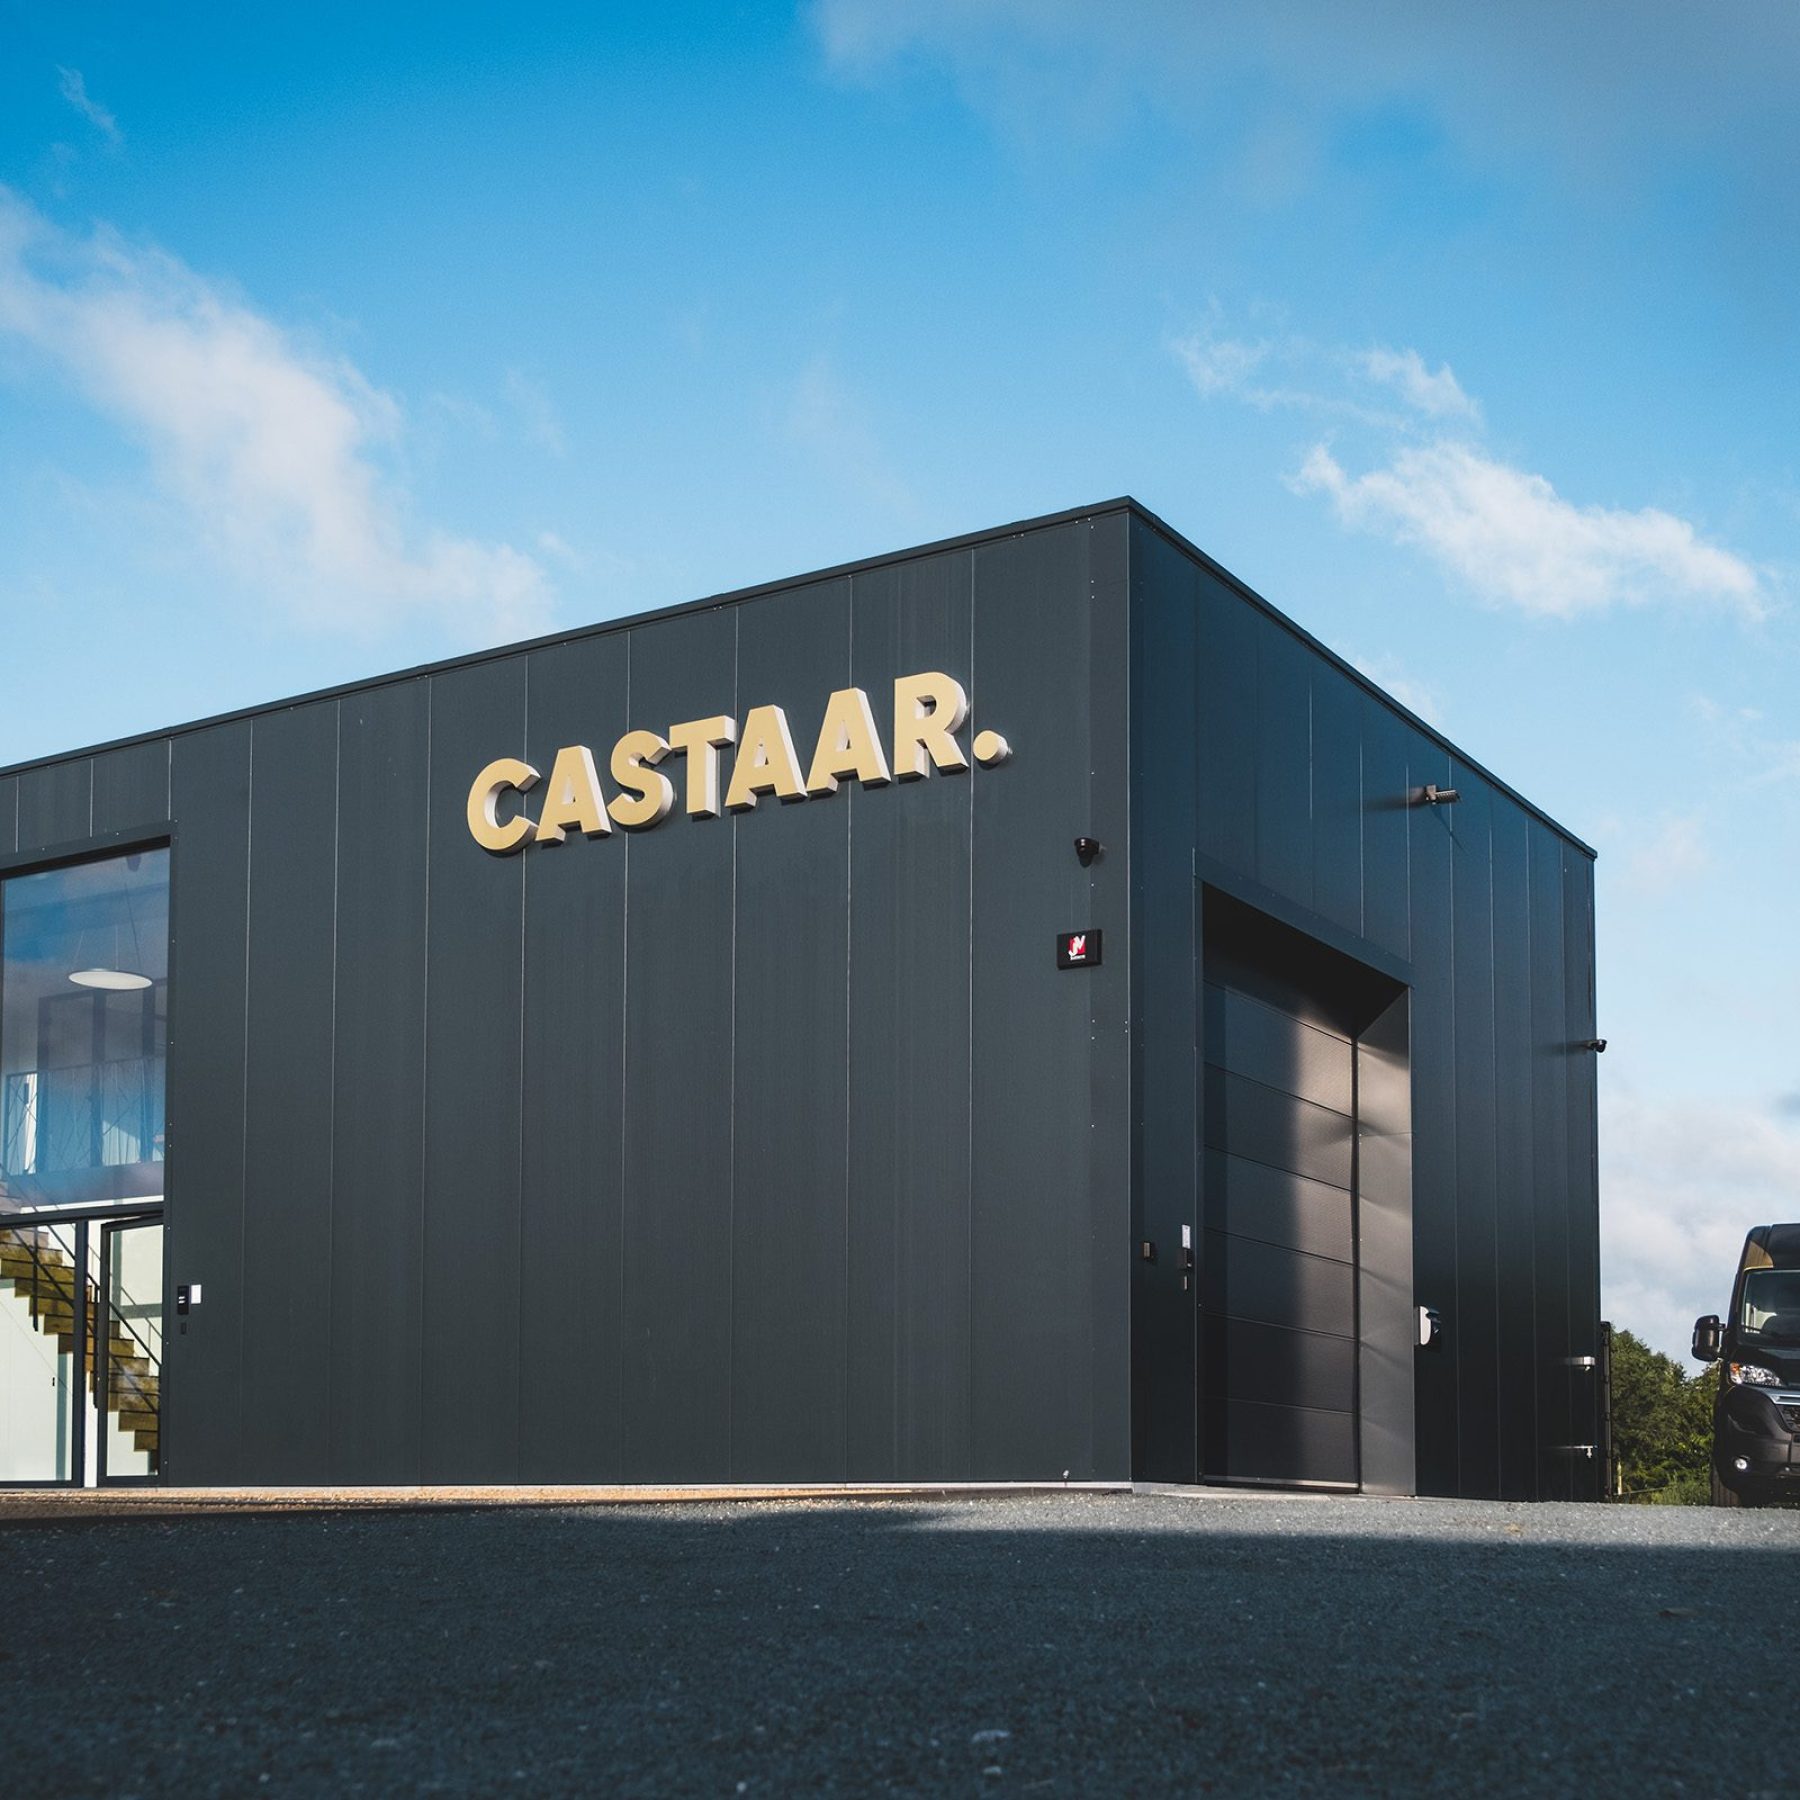 Castaar-the-box-voorgevel